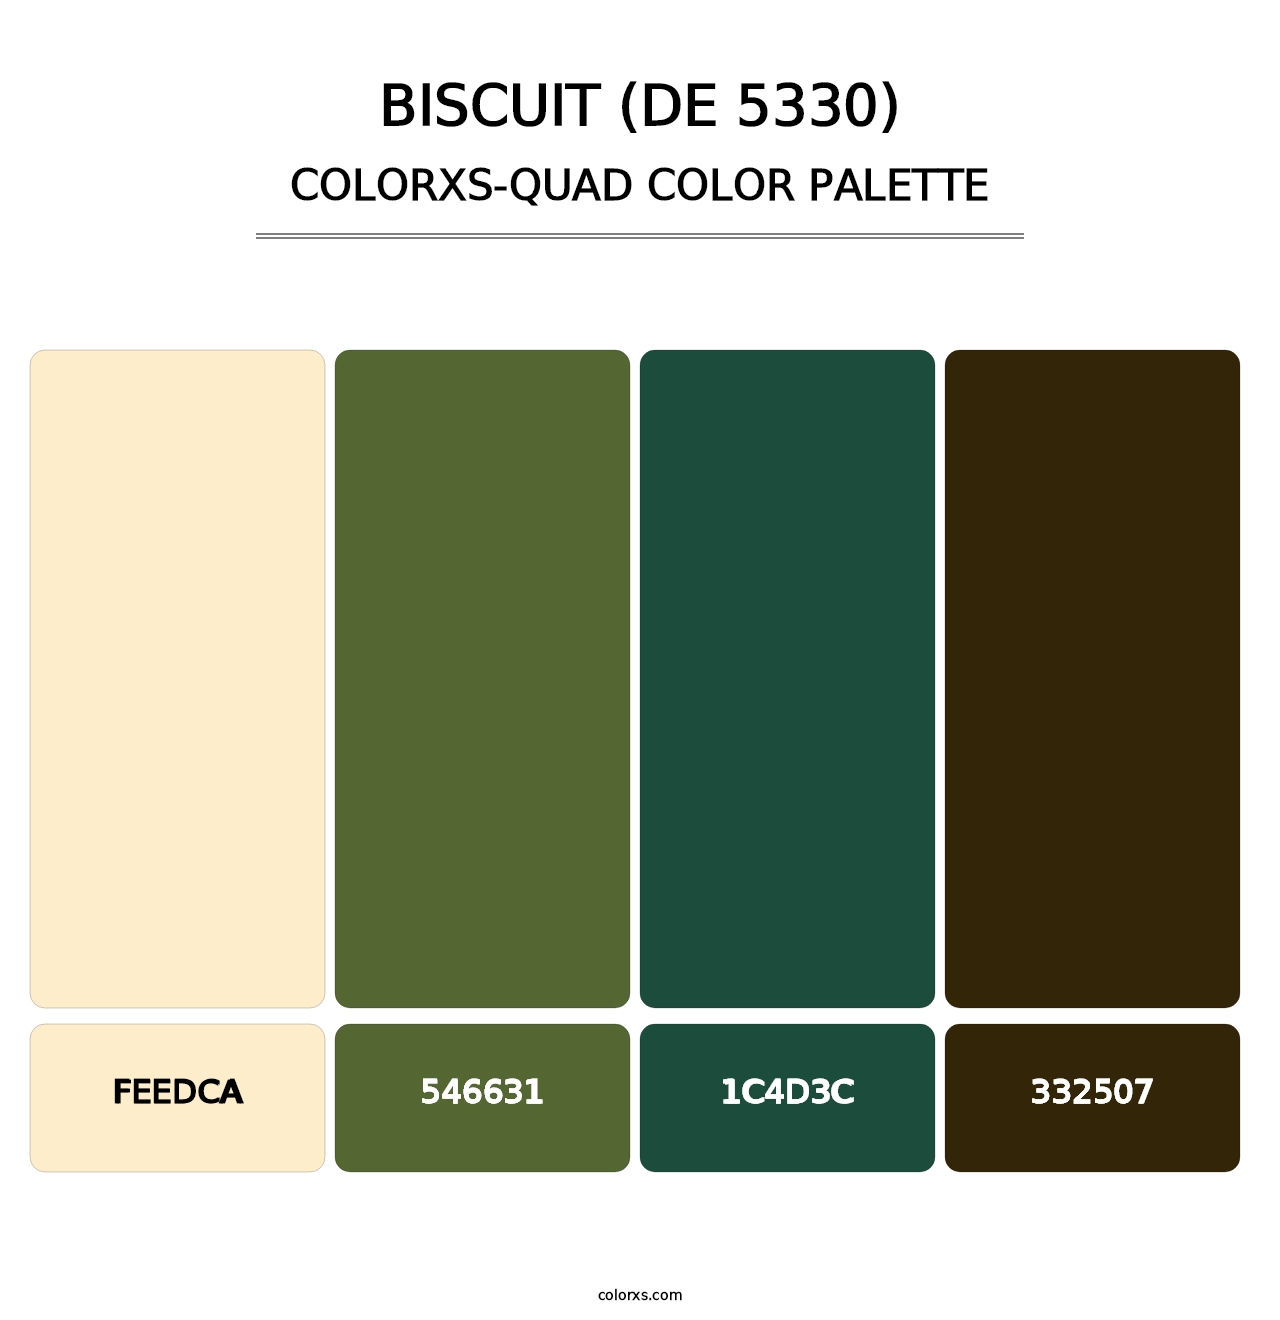 Biscuit (DE 5330) - Colorxs Quad Palette